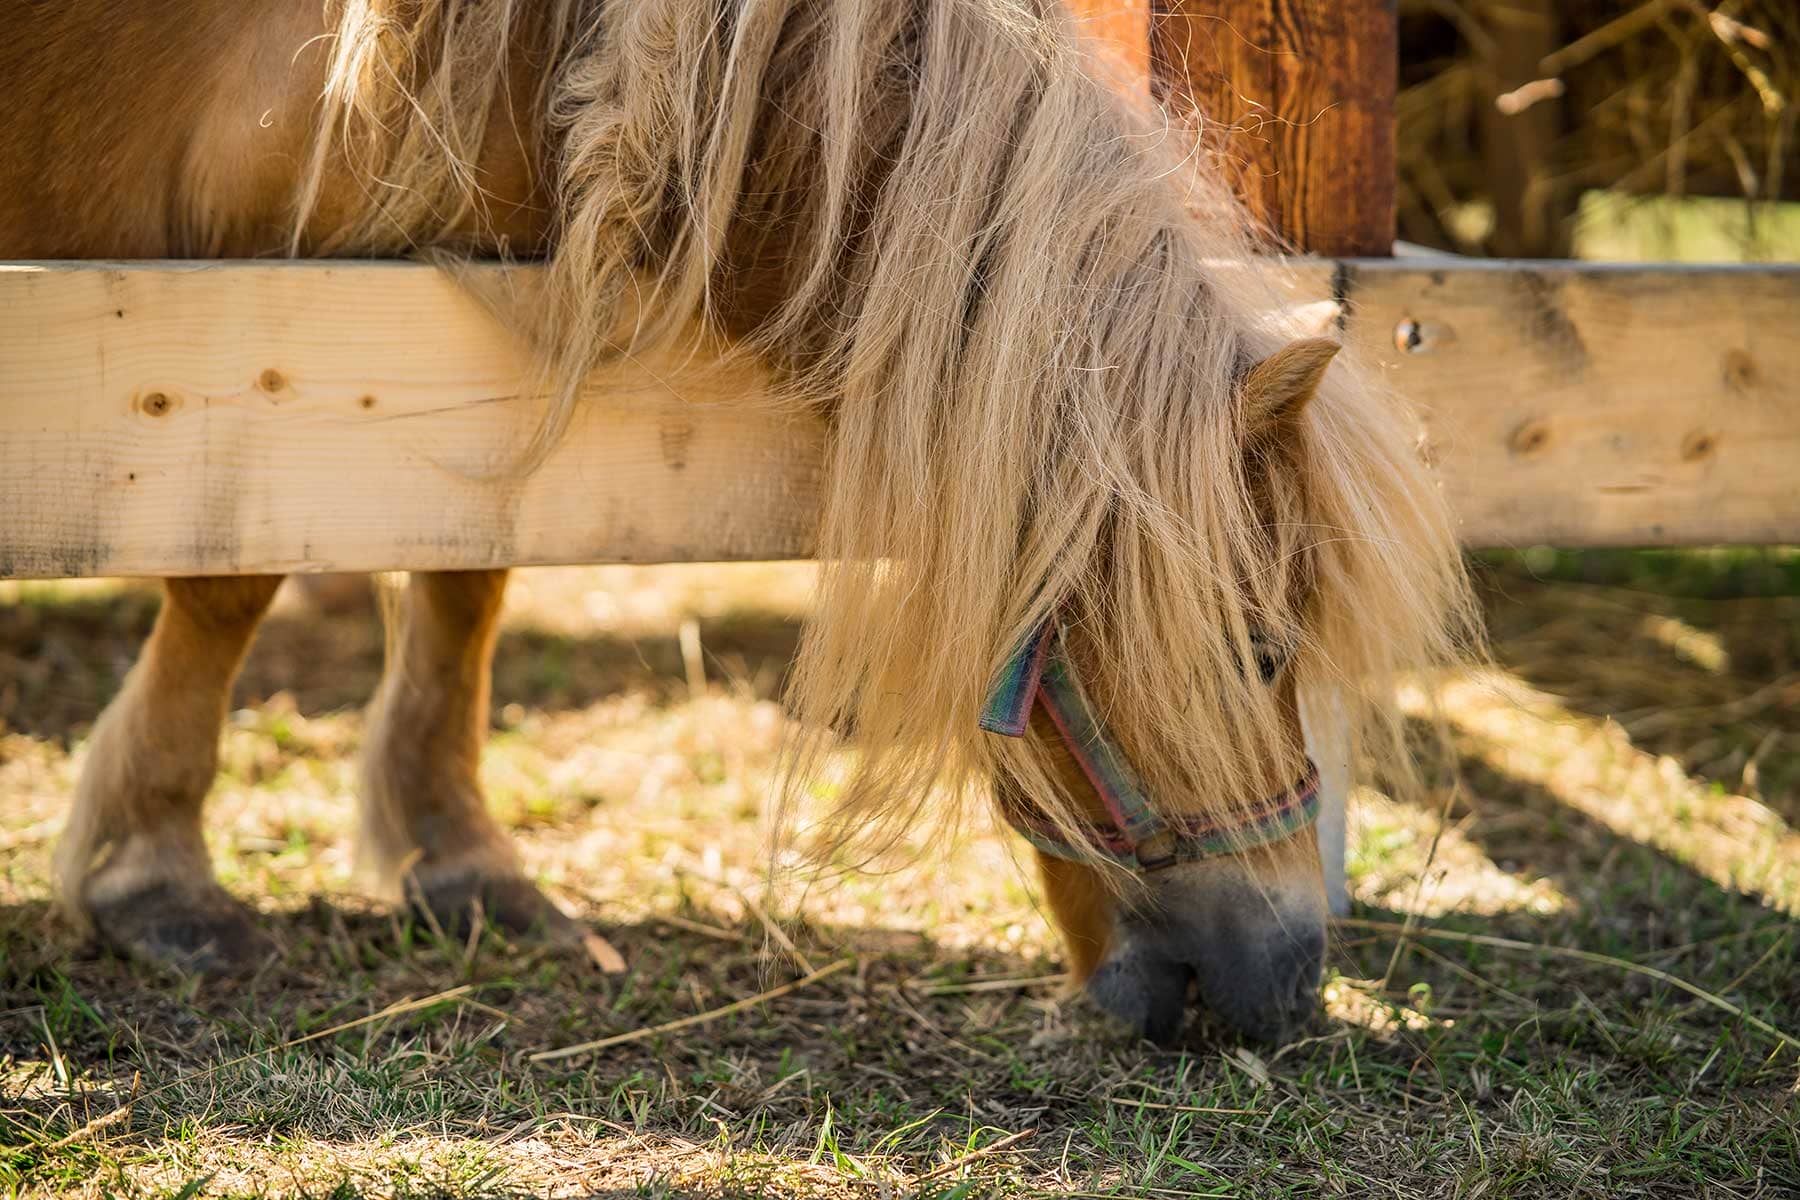 Kuc szetlandzki – rasa koni zaliczanych do kuców, pochodząca z Wysp Szetlandzkich. Jest to jedna z najmniejszych ras występujących obecnie kuców – ich niski wzrost jest wynikiem naturalnego procesu skarłowacenia.